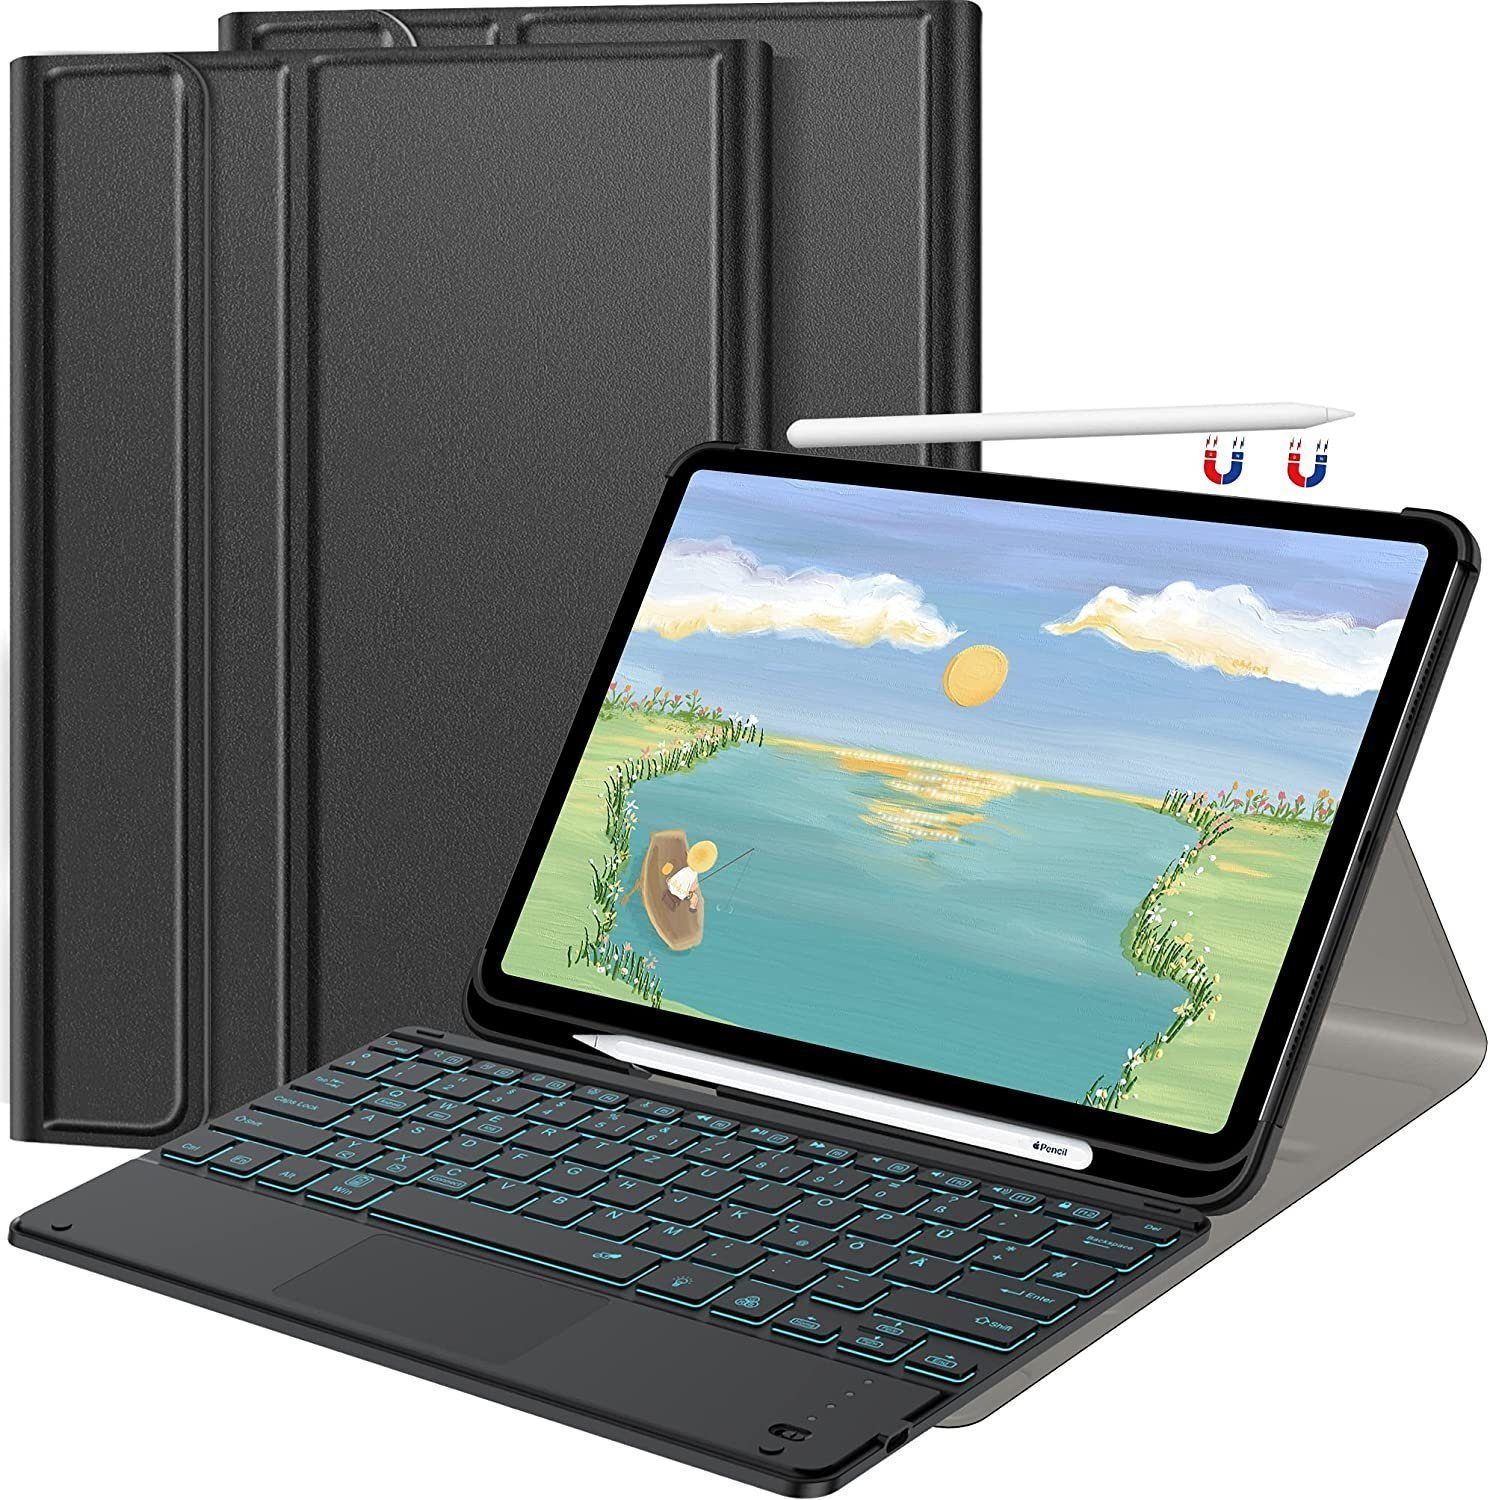 IVSO »Tablet-Tastatur mit Touchpad für iPad Pro 12.9 Zoll Kabellose  Beleuchtete QWERTZ Tastatur Hülle für iPad Pro 12.9 Zoll 5. Gen 2021/2020,  Schwarz.« iPad-Tastatur online kaufen | OTTO